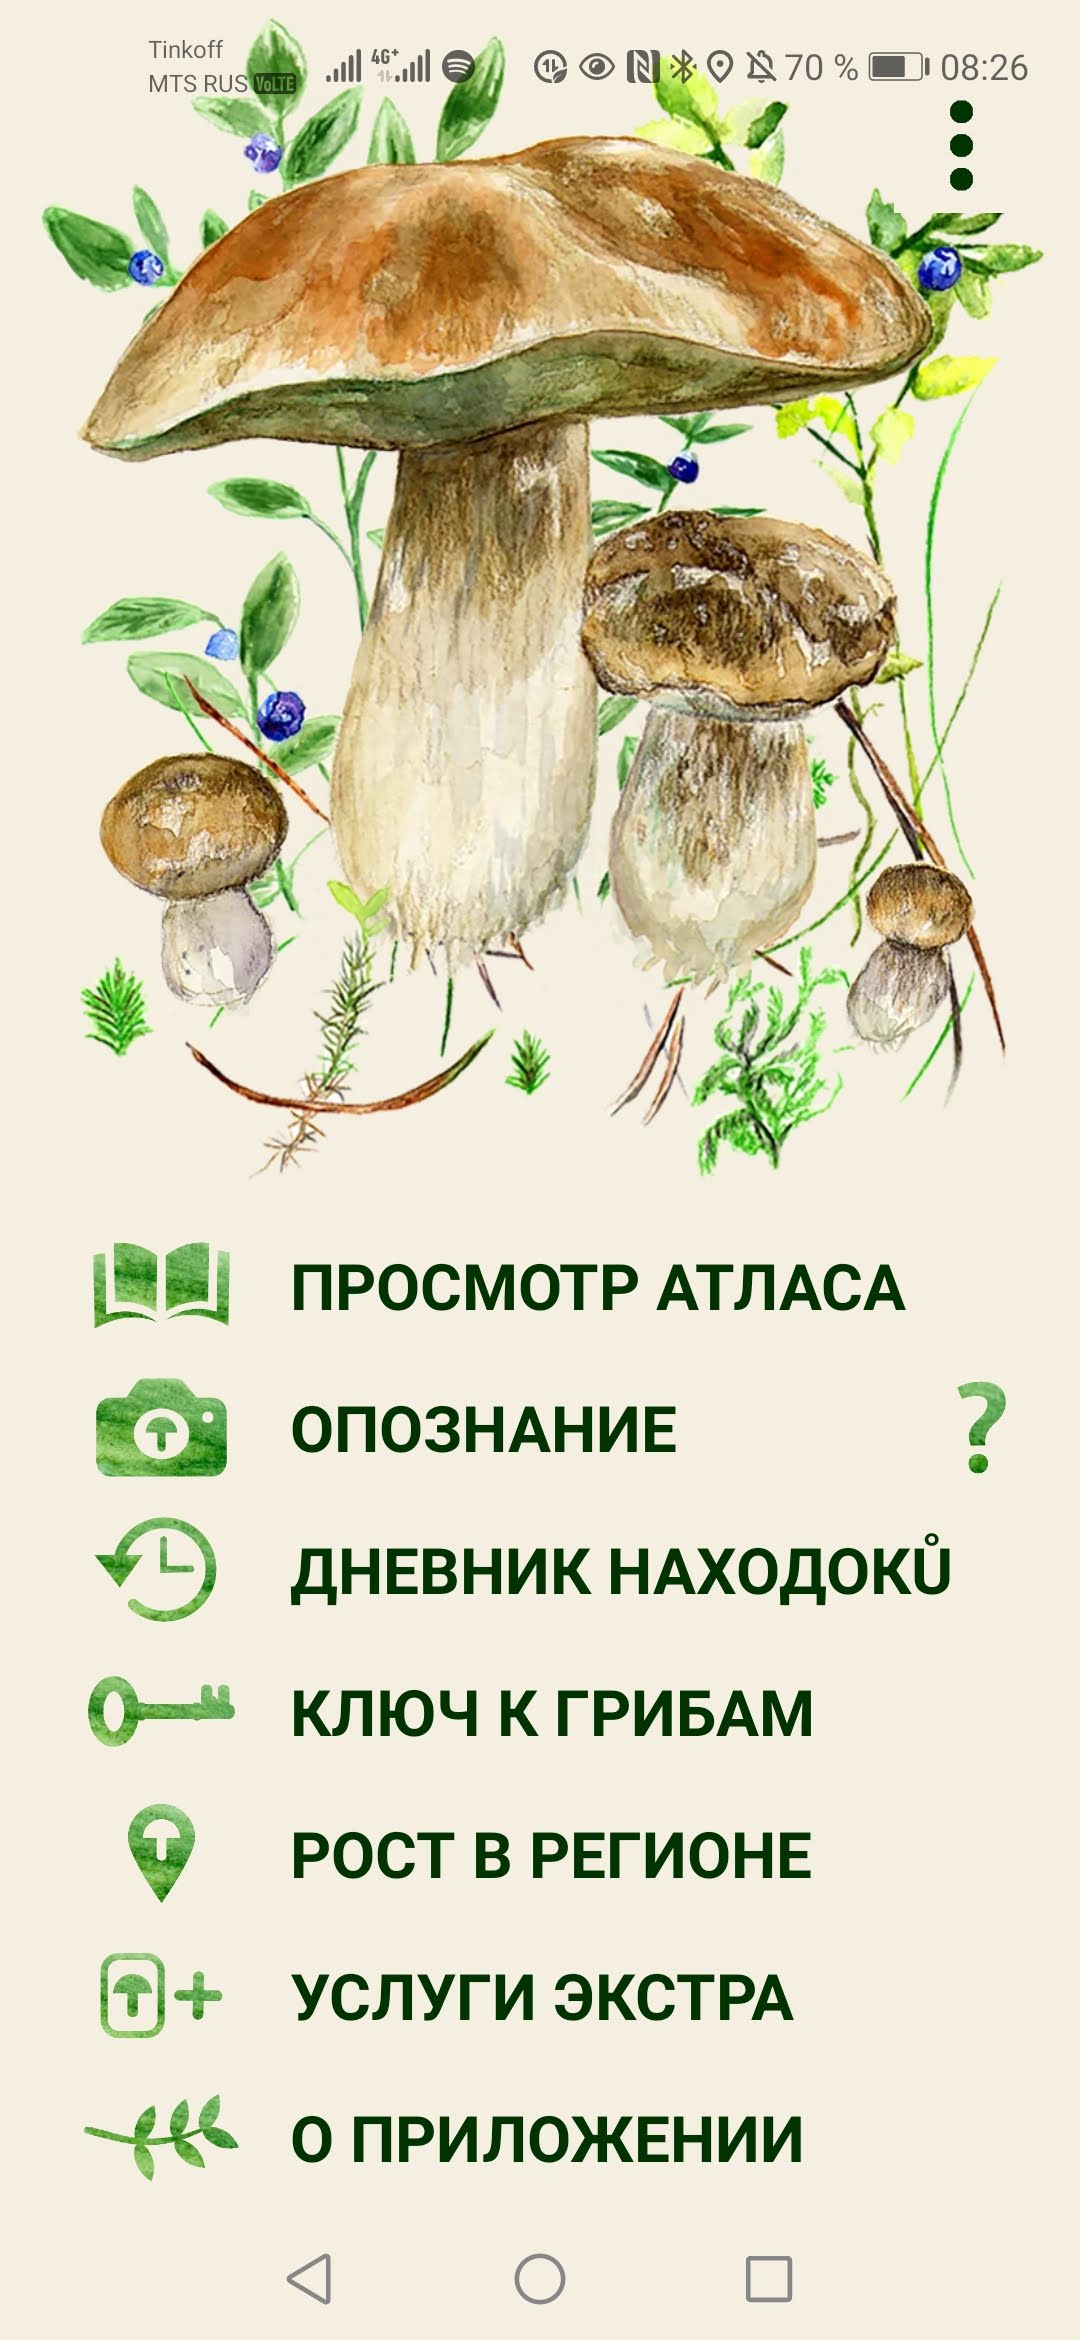 Программа для определения грибов по фото на андроид